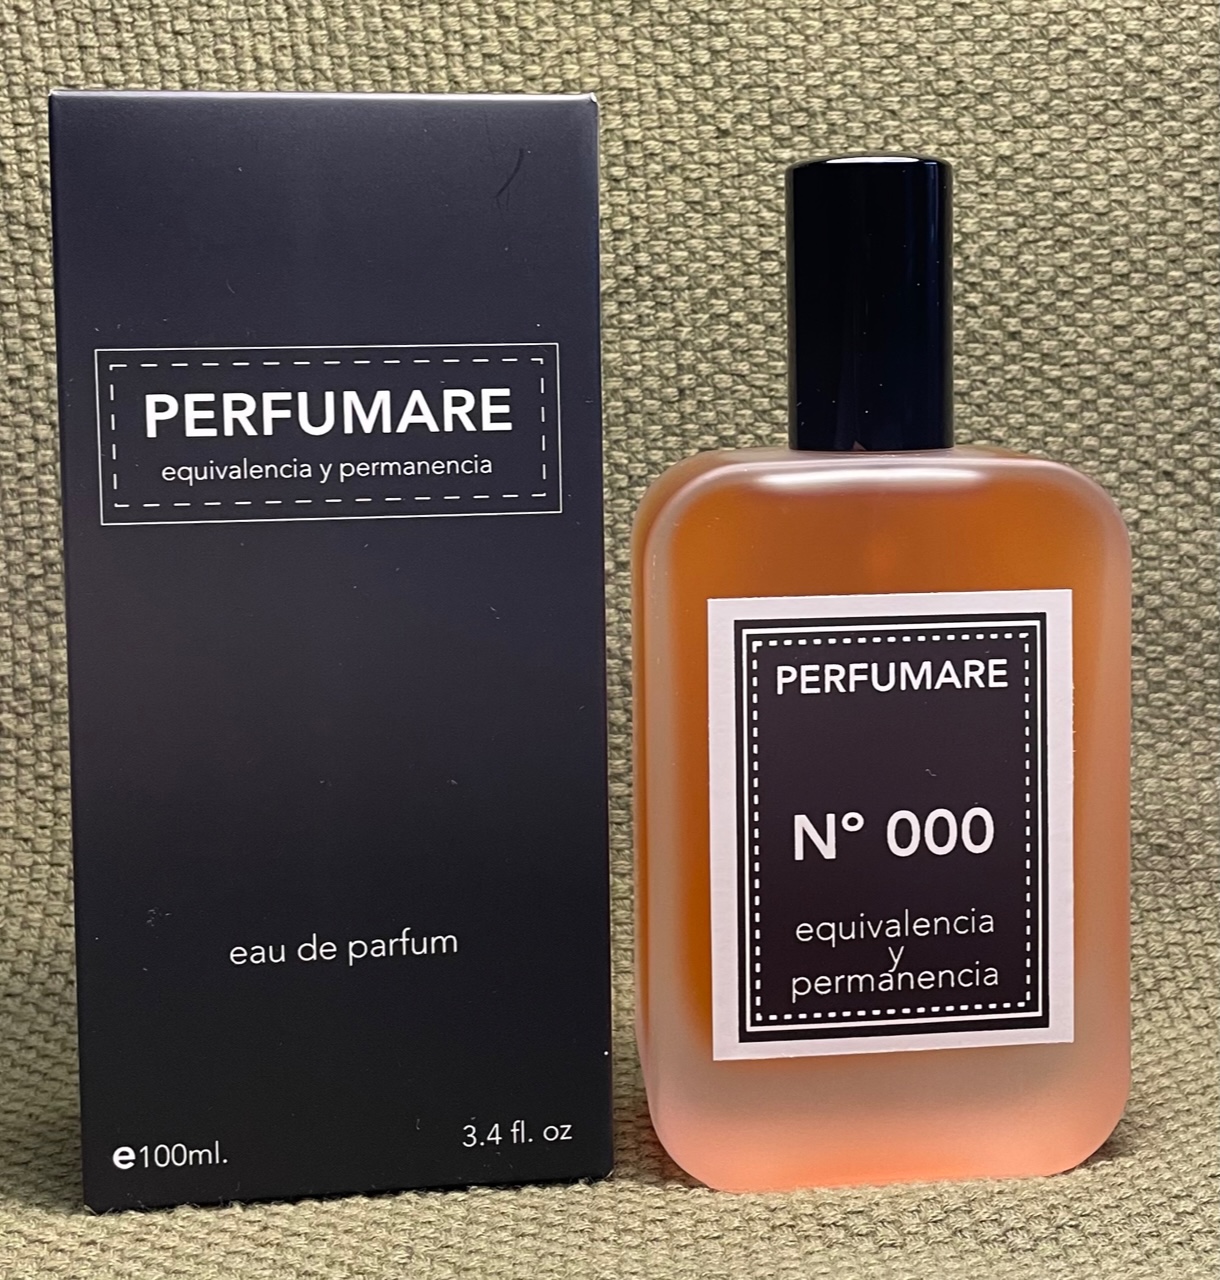 Louis Vuitton ya tiene perfumes para hombres!